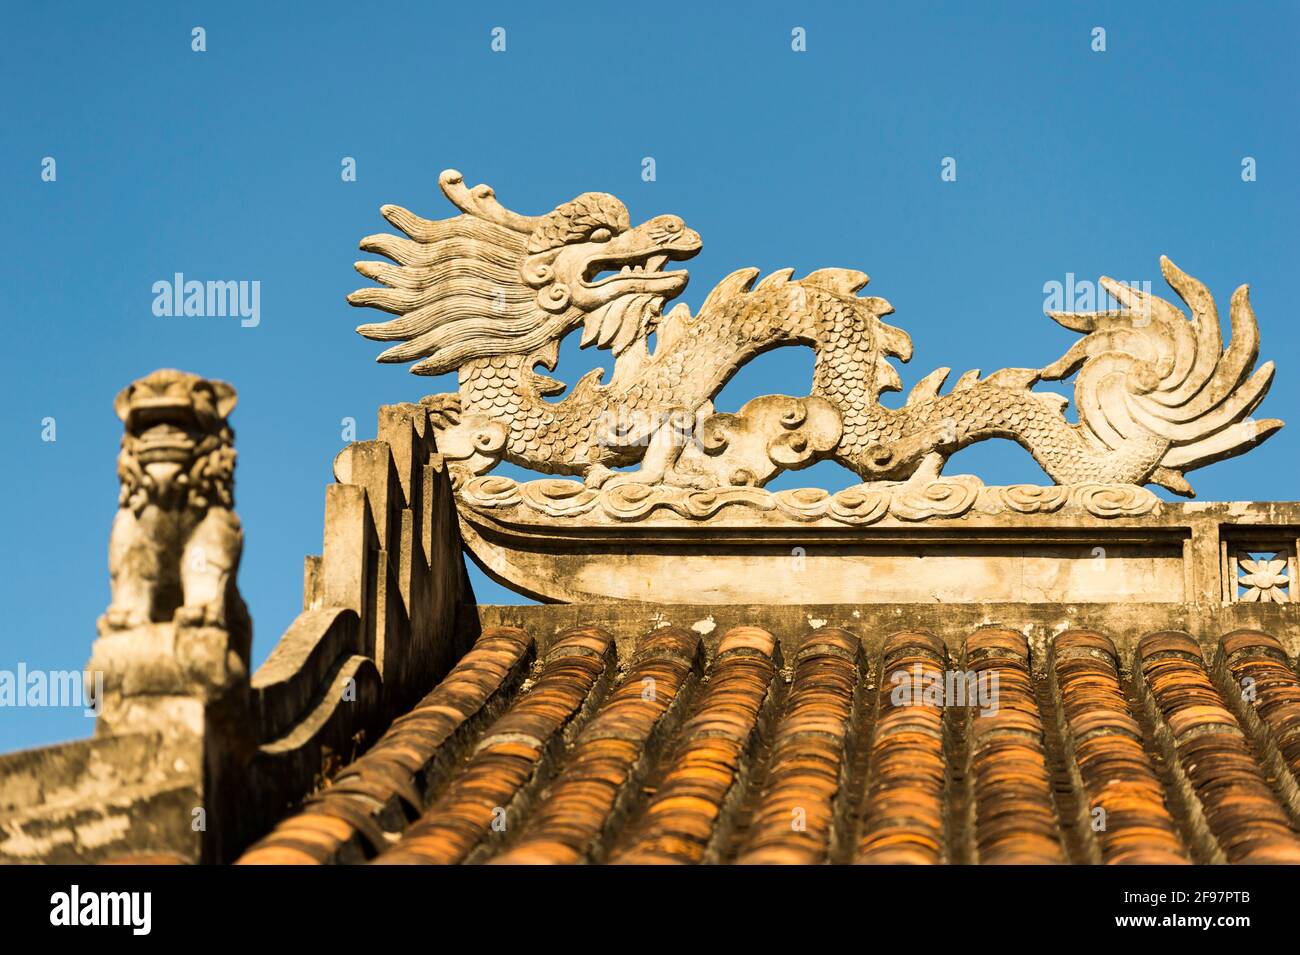 Vietnam, da Nang, montagne di marmo, tetto, dettaglio, drago, Foto Stock